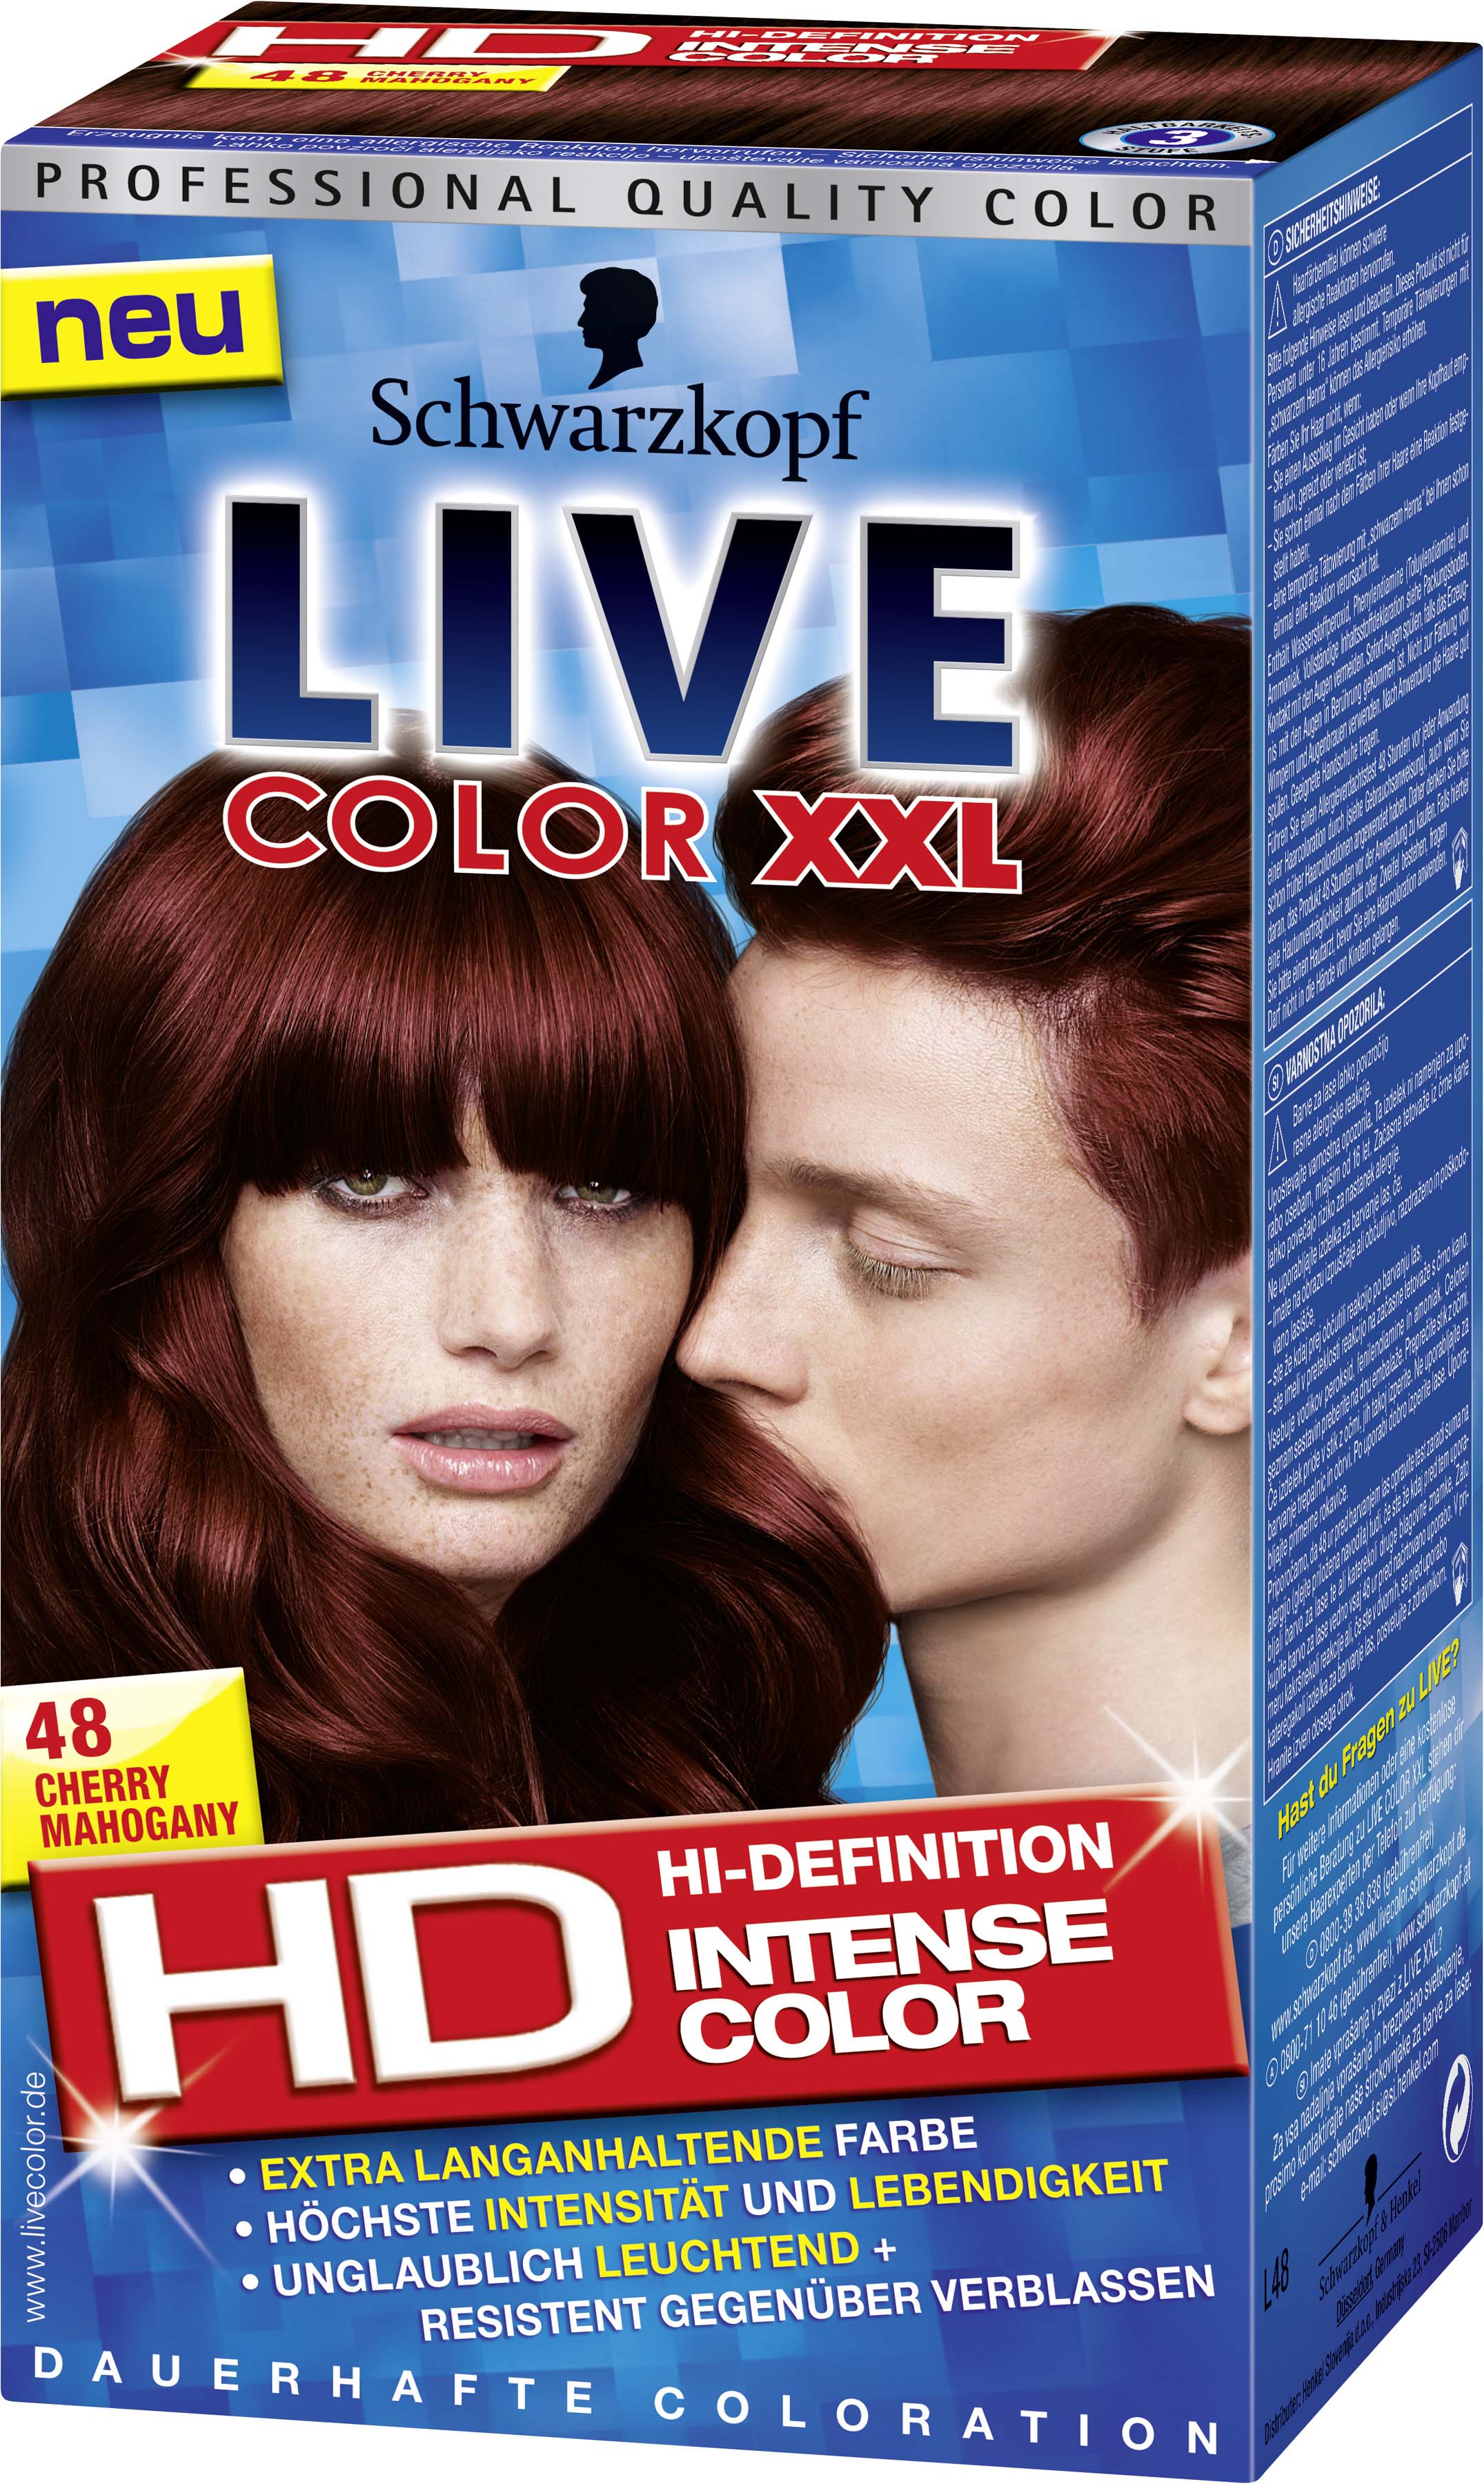 Intensiver als die Realität: Das neue Live Color XXL HD sorgt für eine wahr...